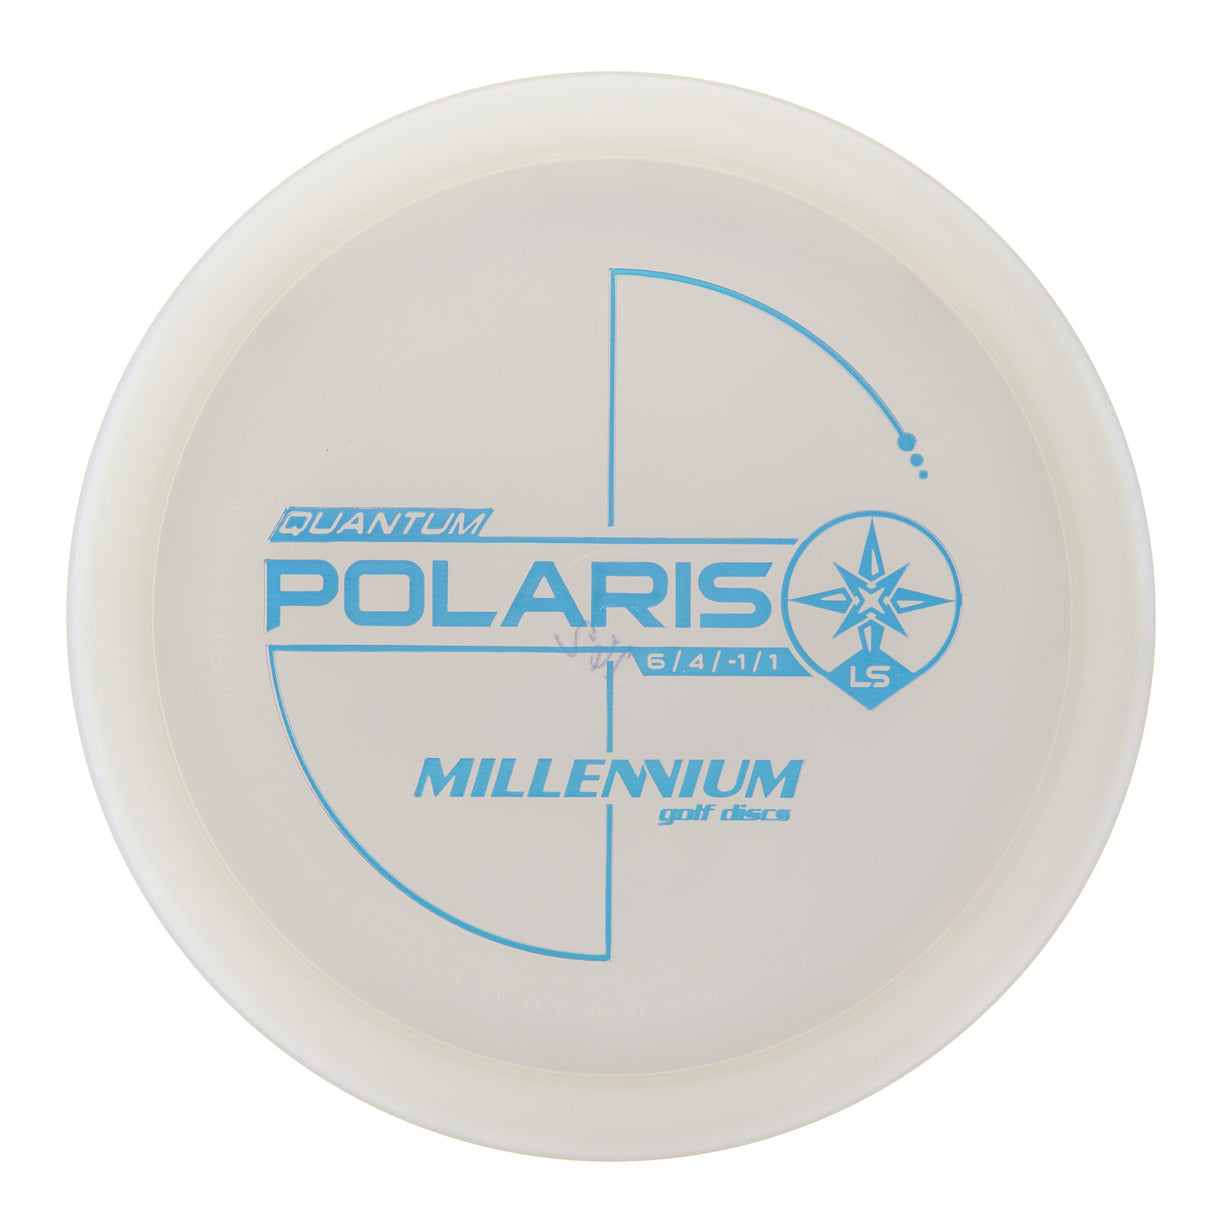 Millennium Polaris LS - Quantum 162g | Style 0001